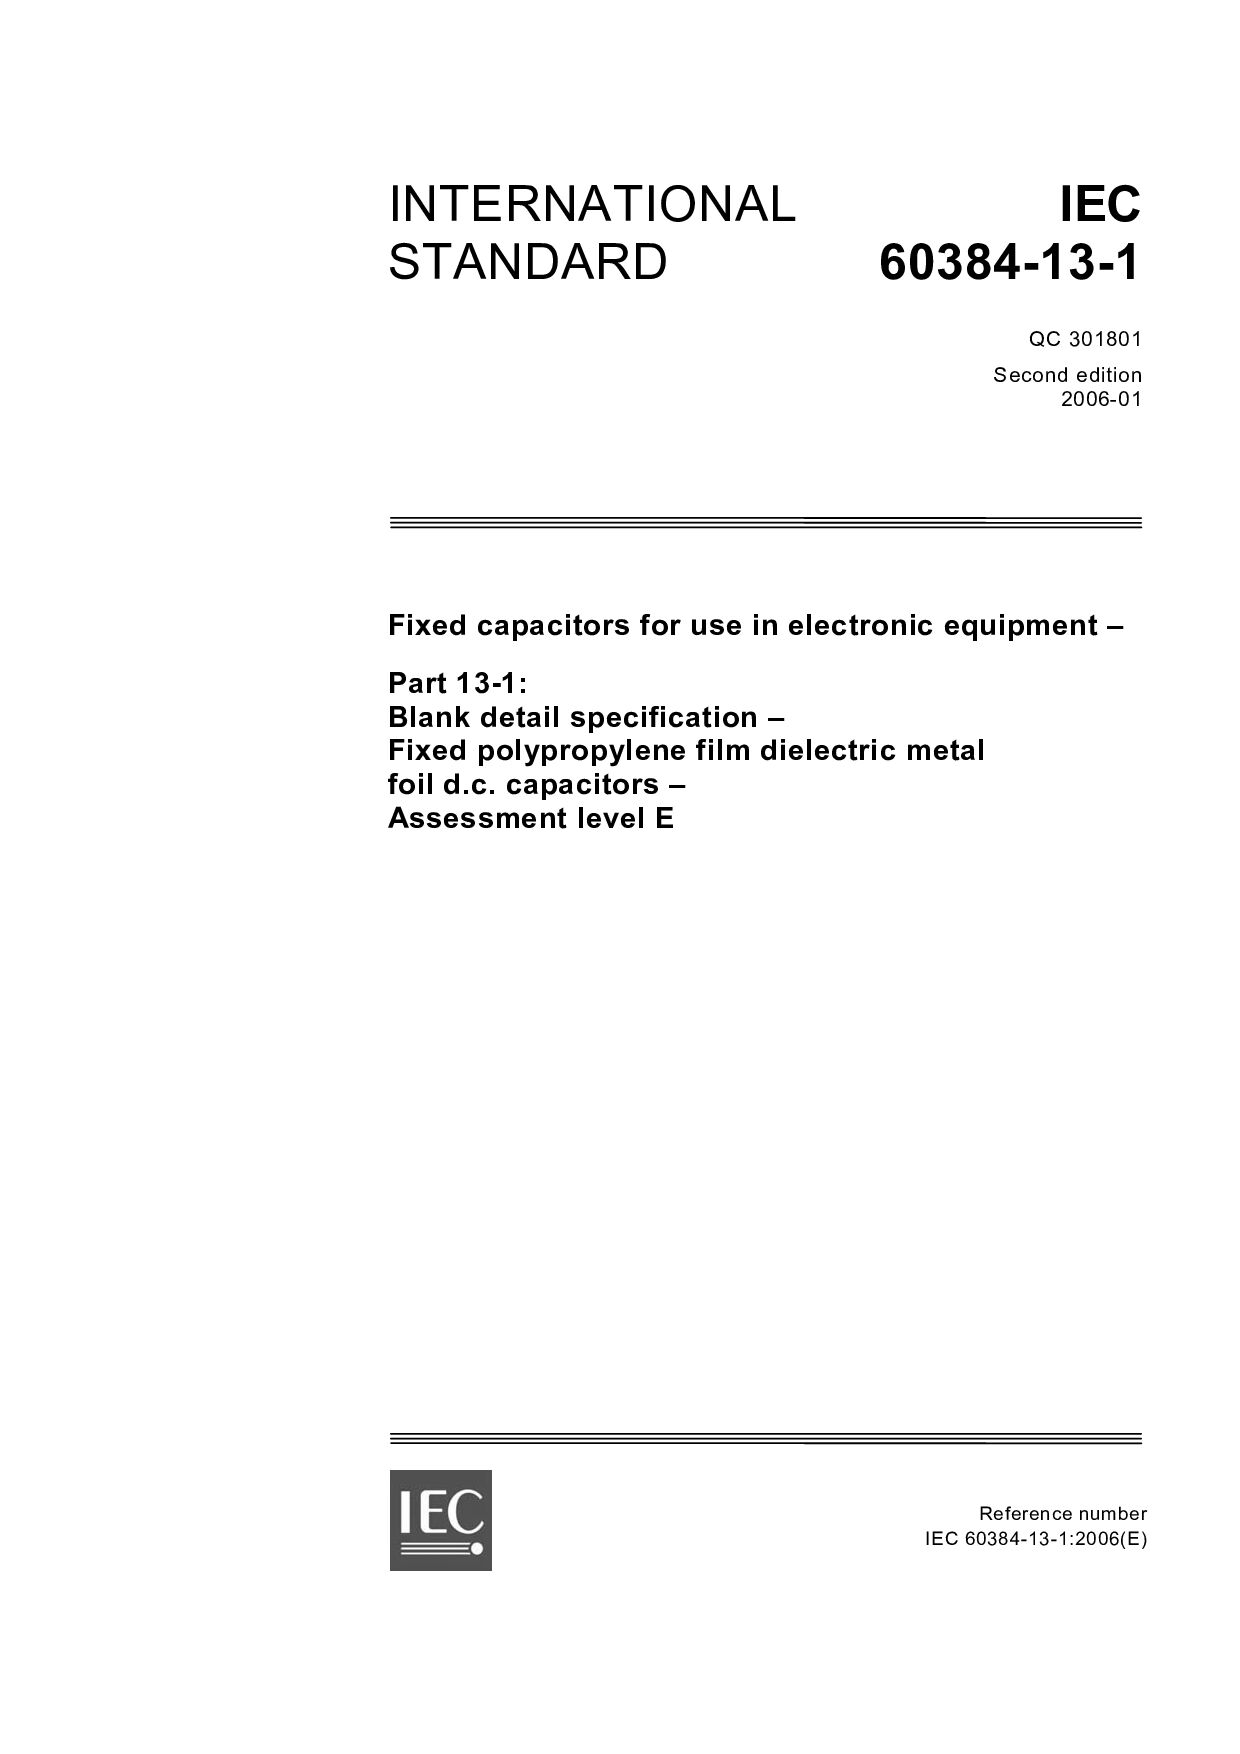 IEC 60384-13-1:2006